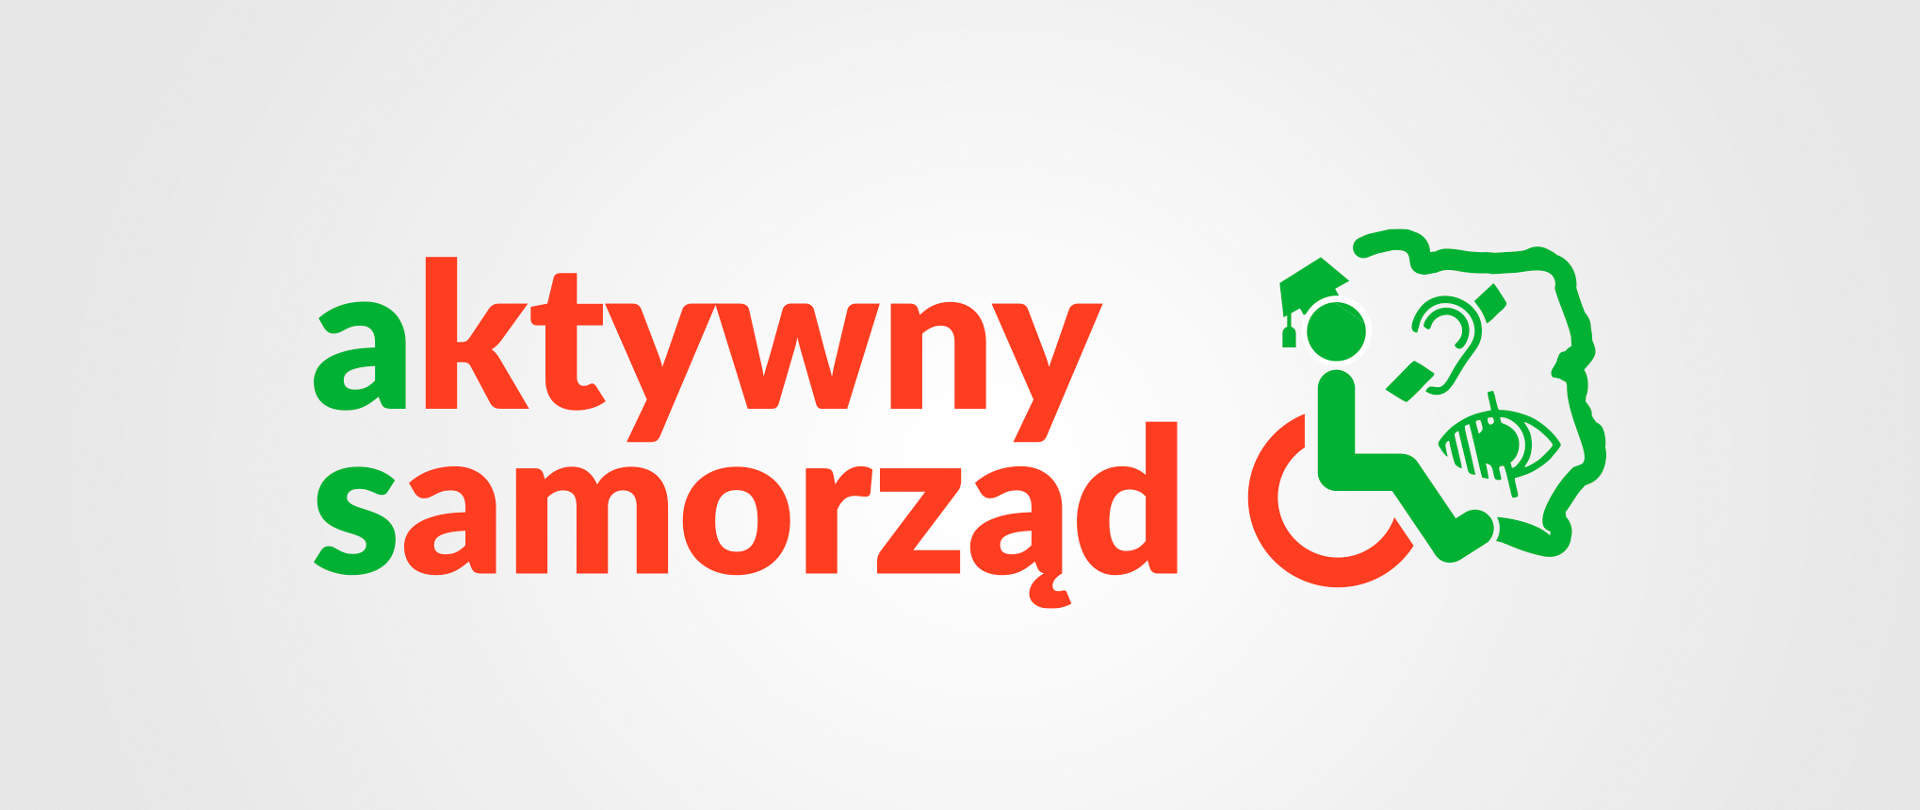 Pomarańczowy napis aktywny samorząd i zielony kontur Polski z ikoną osoby poruszającej się na wózku inwalidzkim